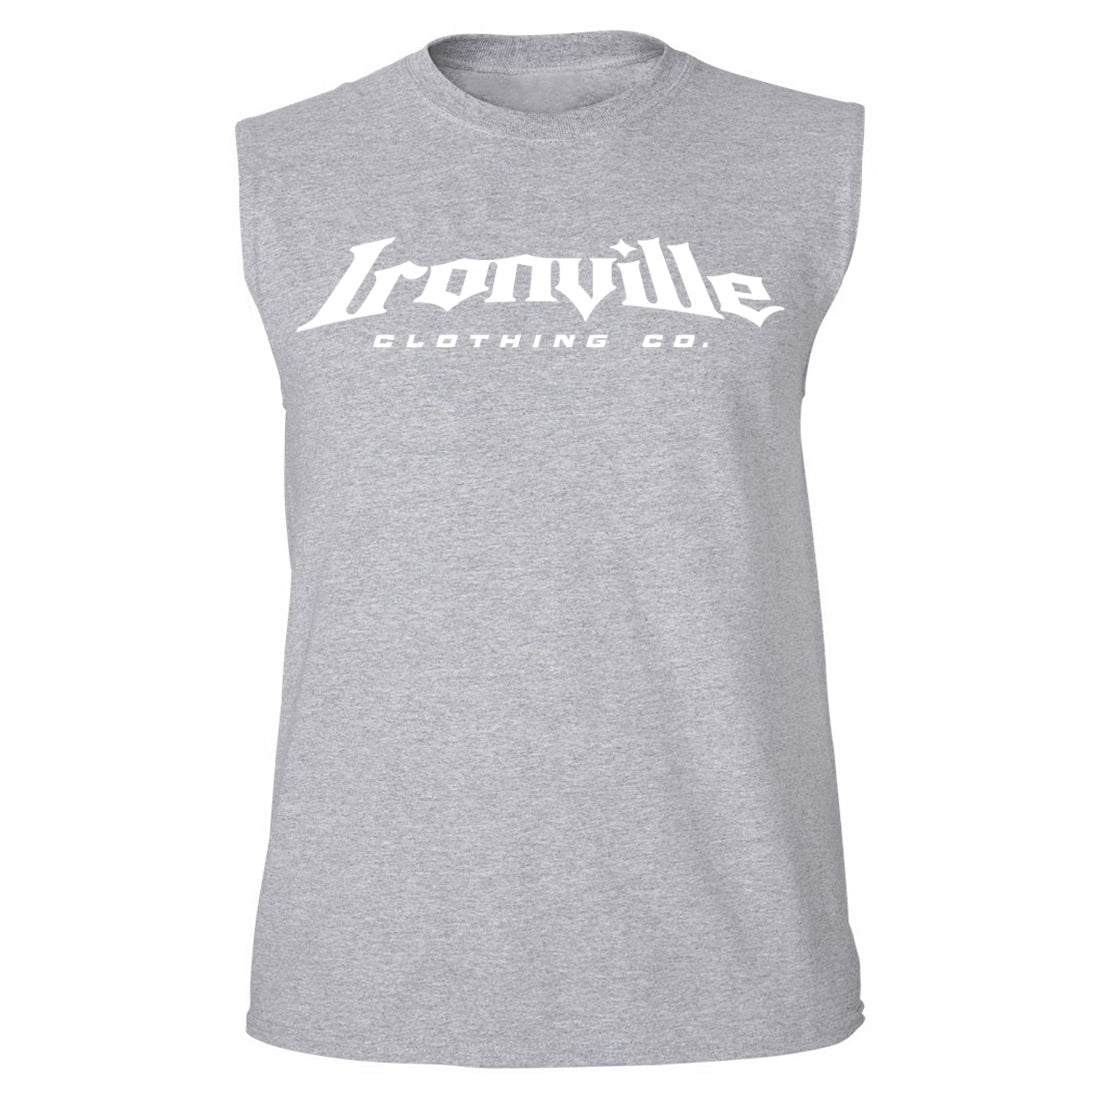 Ironville LION LAMB Sleeveless Muscle T-shirt